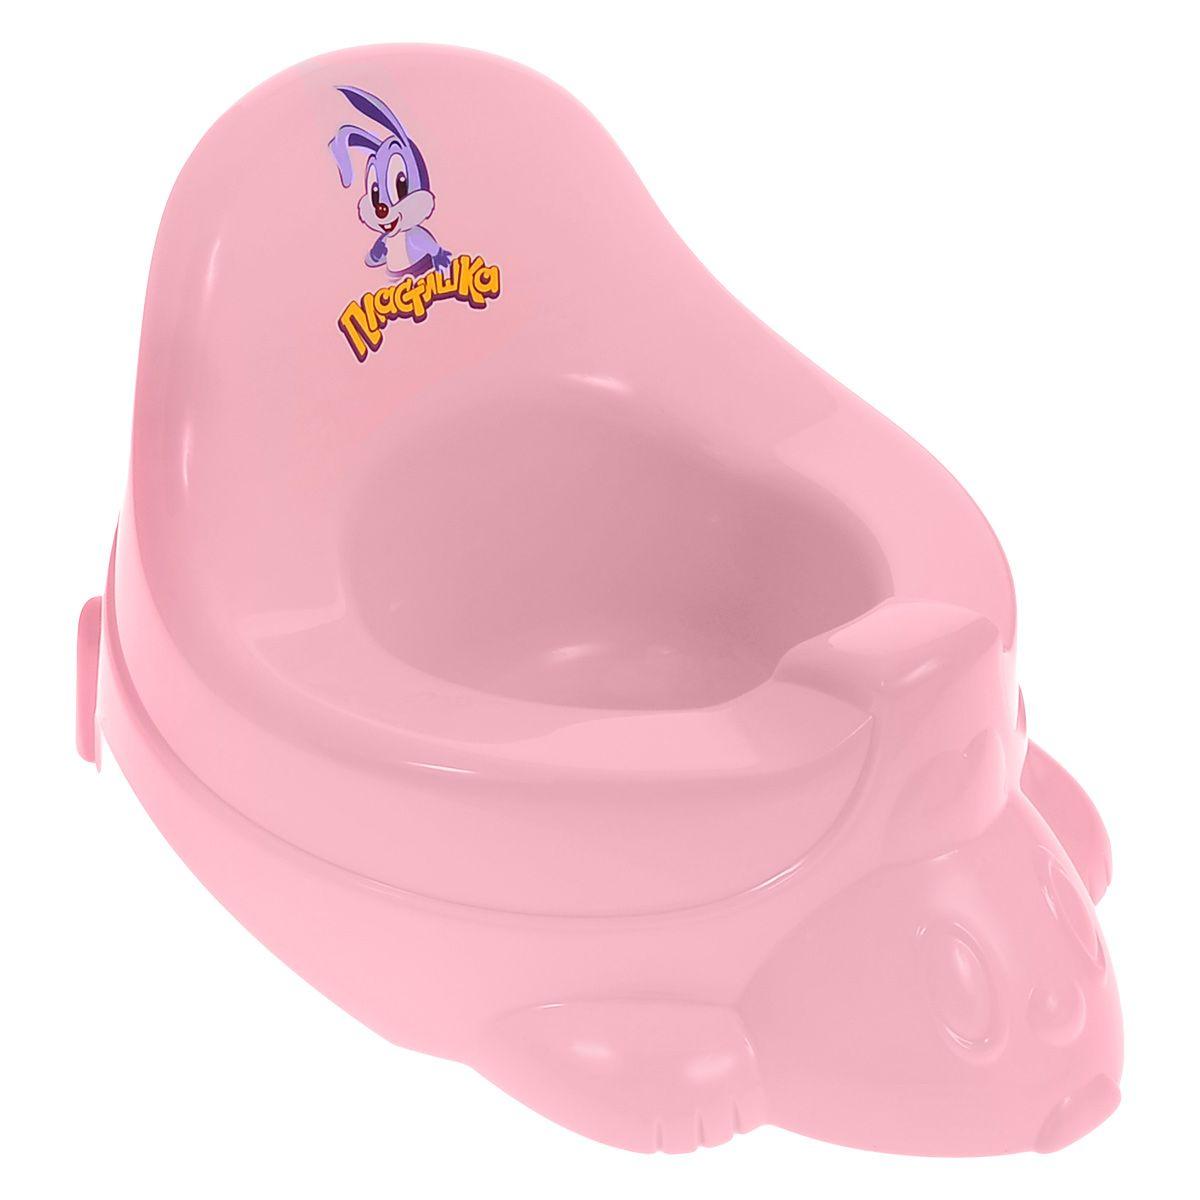 С13261Р Горшок - игрушка детский туалетный,(розовый) 9 шт/кор., Россия